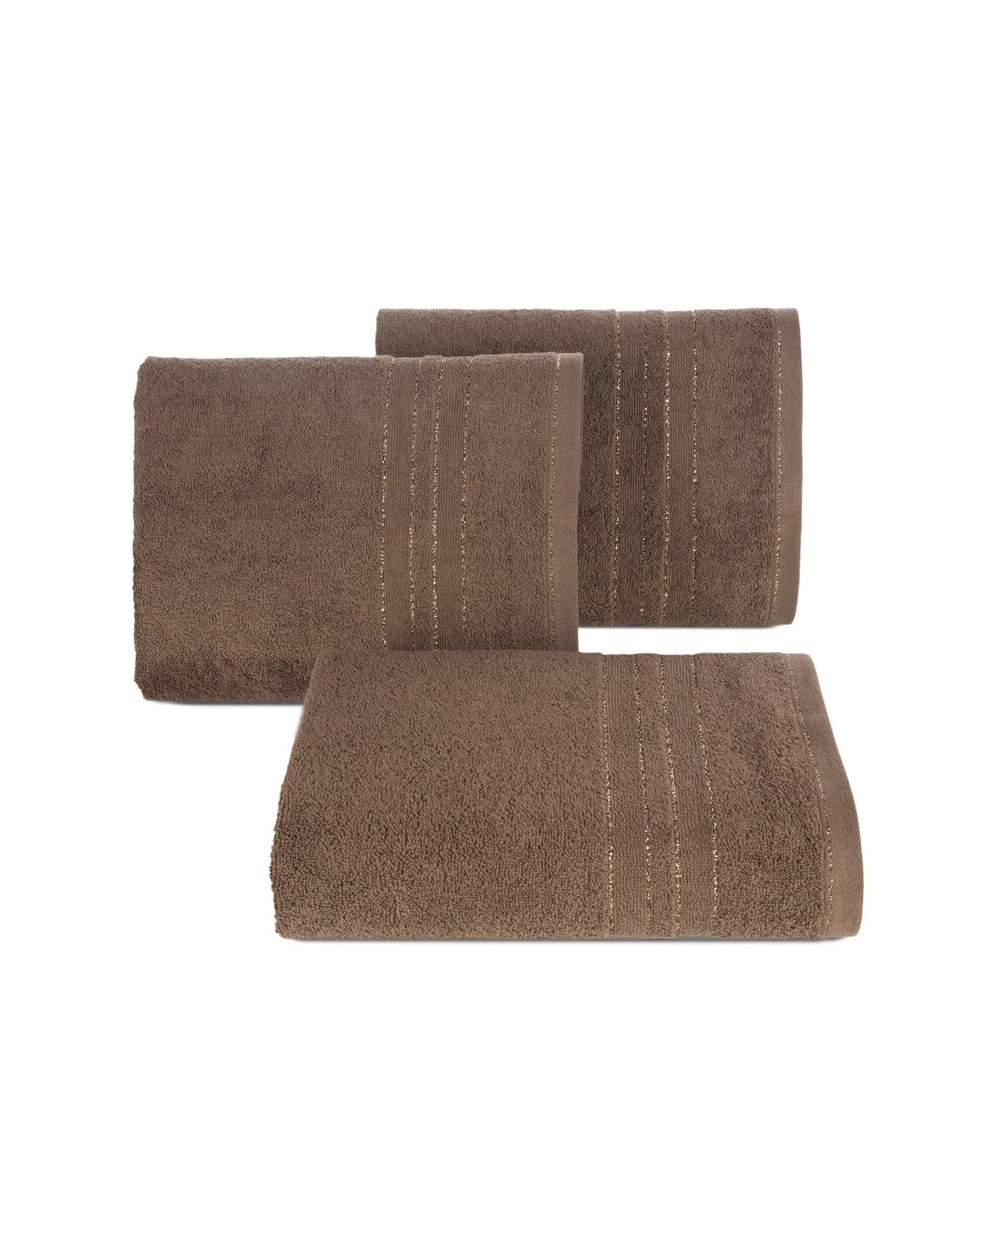 Ręcznik bawełna 70x140 Gala ciemnobrązowy Eurofirany 